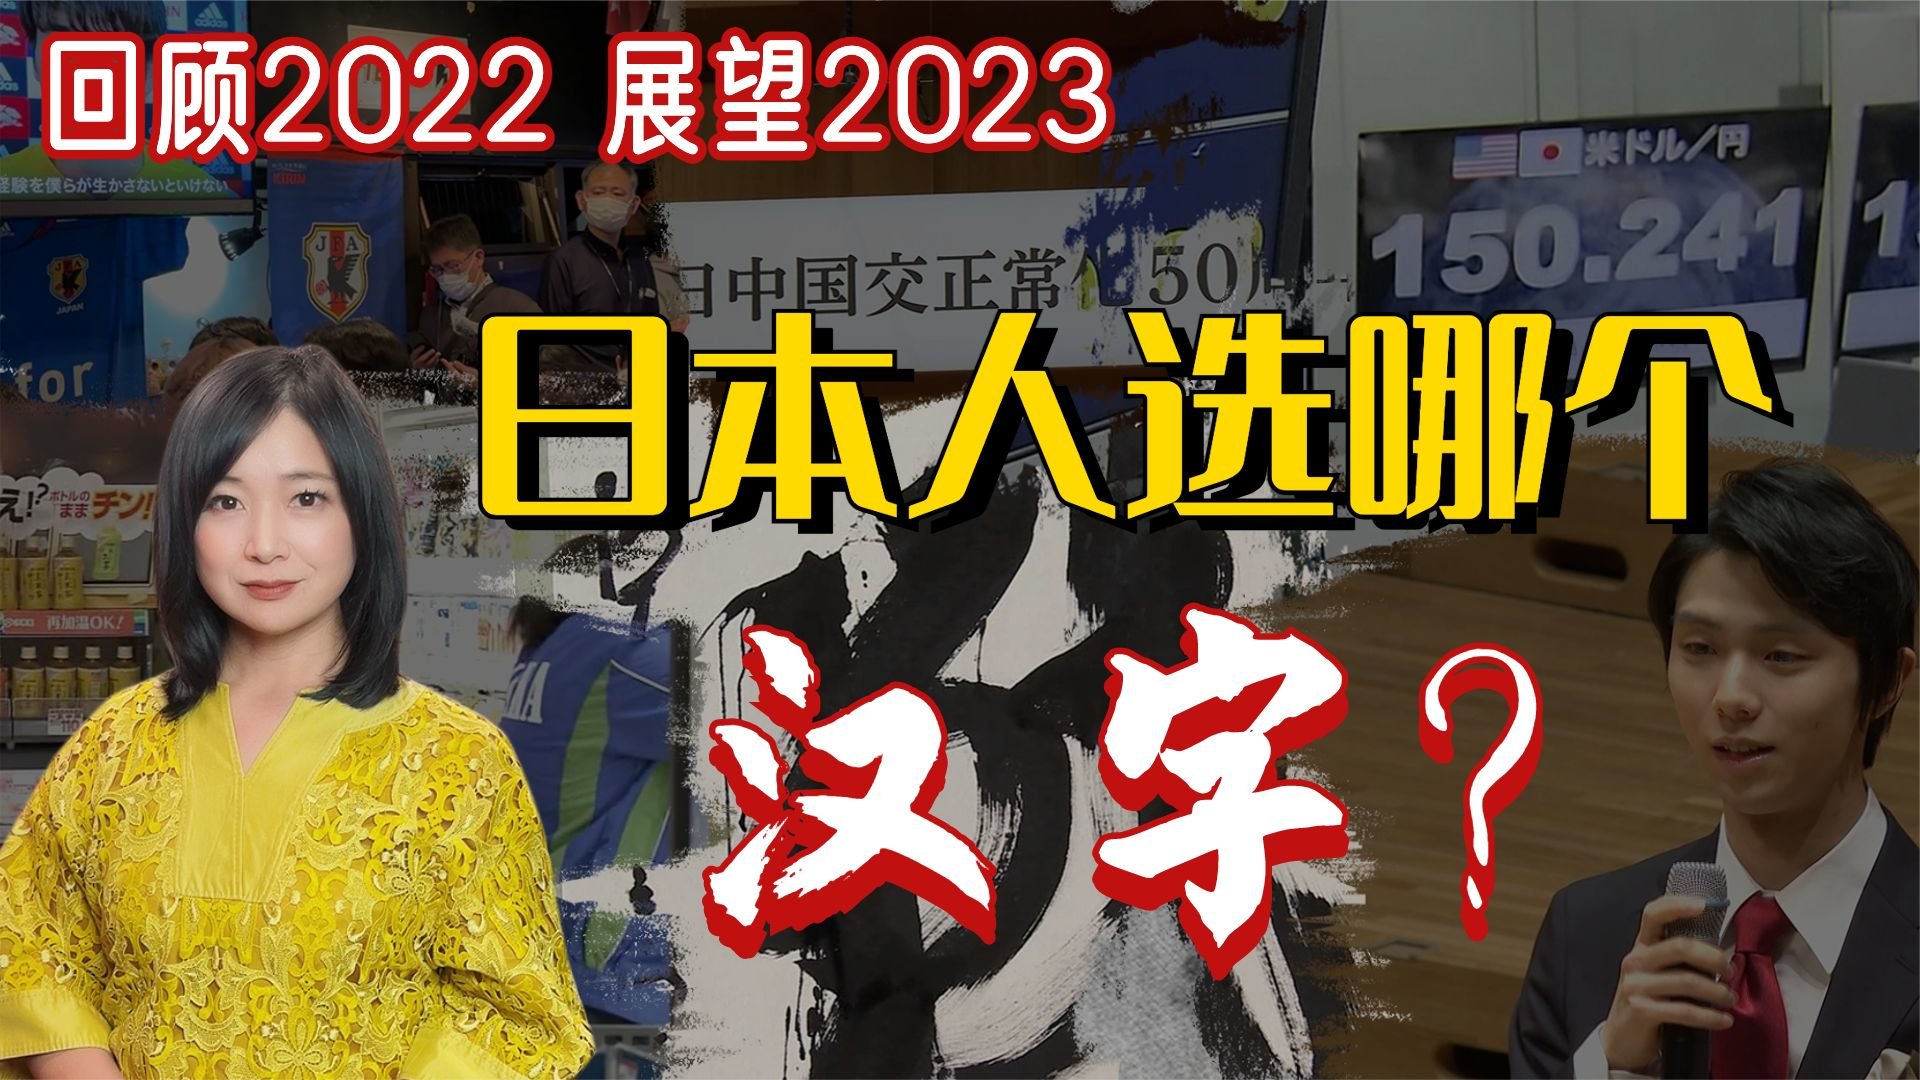 日本人选哪个汉字来总结2022年？他们的回答或许会让你眼前一亮